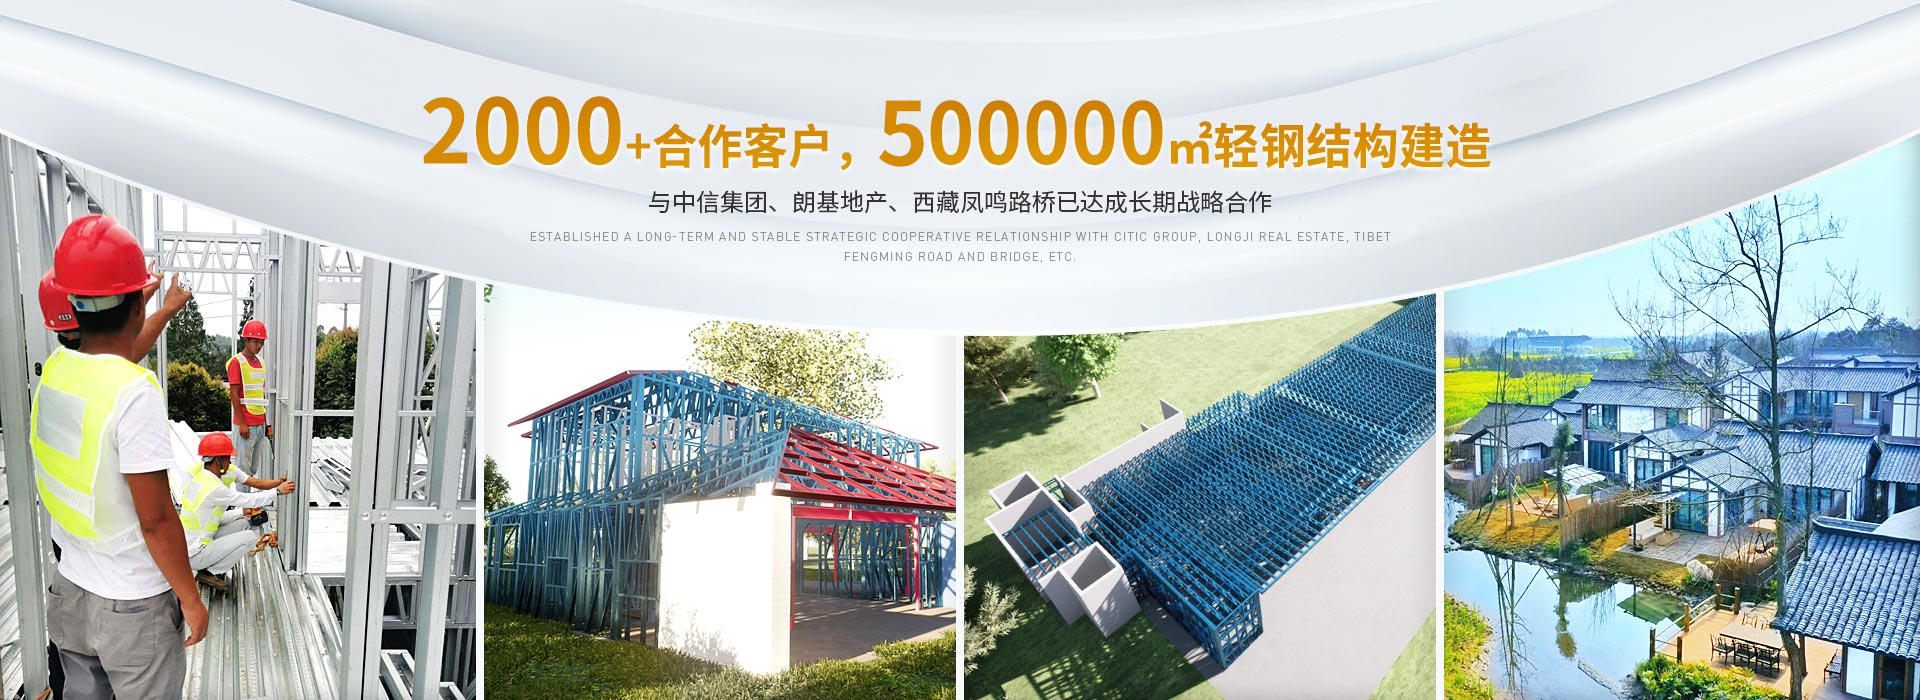 中天晟源2000+合作客户,500000m²轻钢结构建造